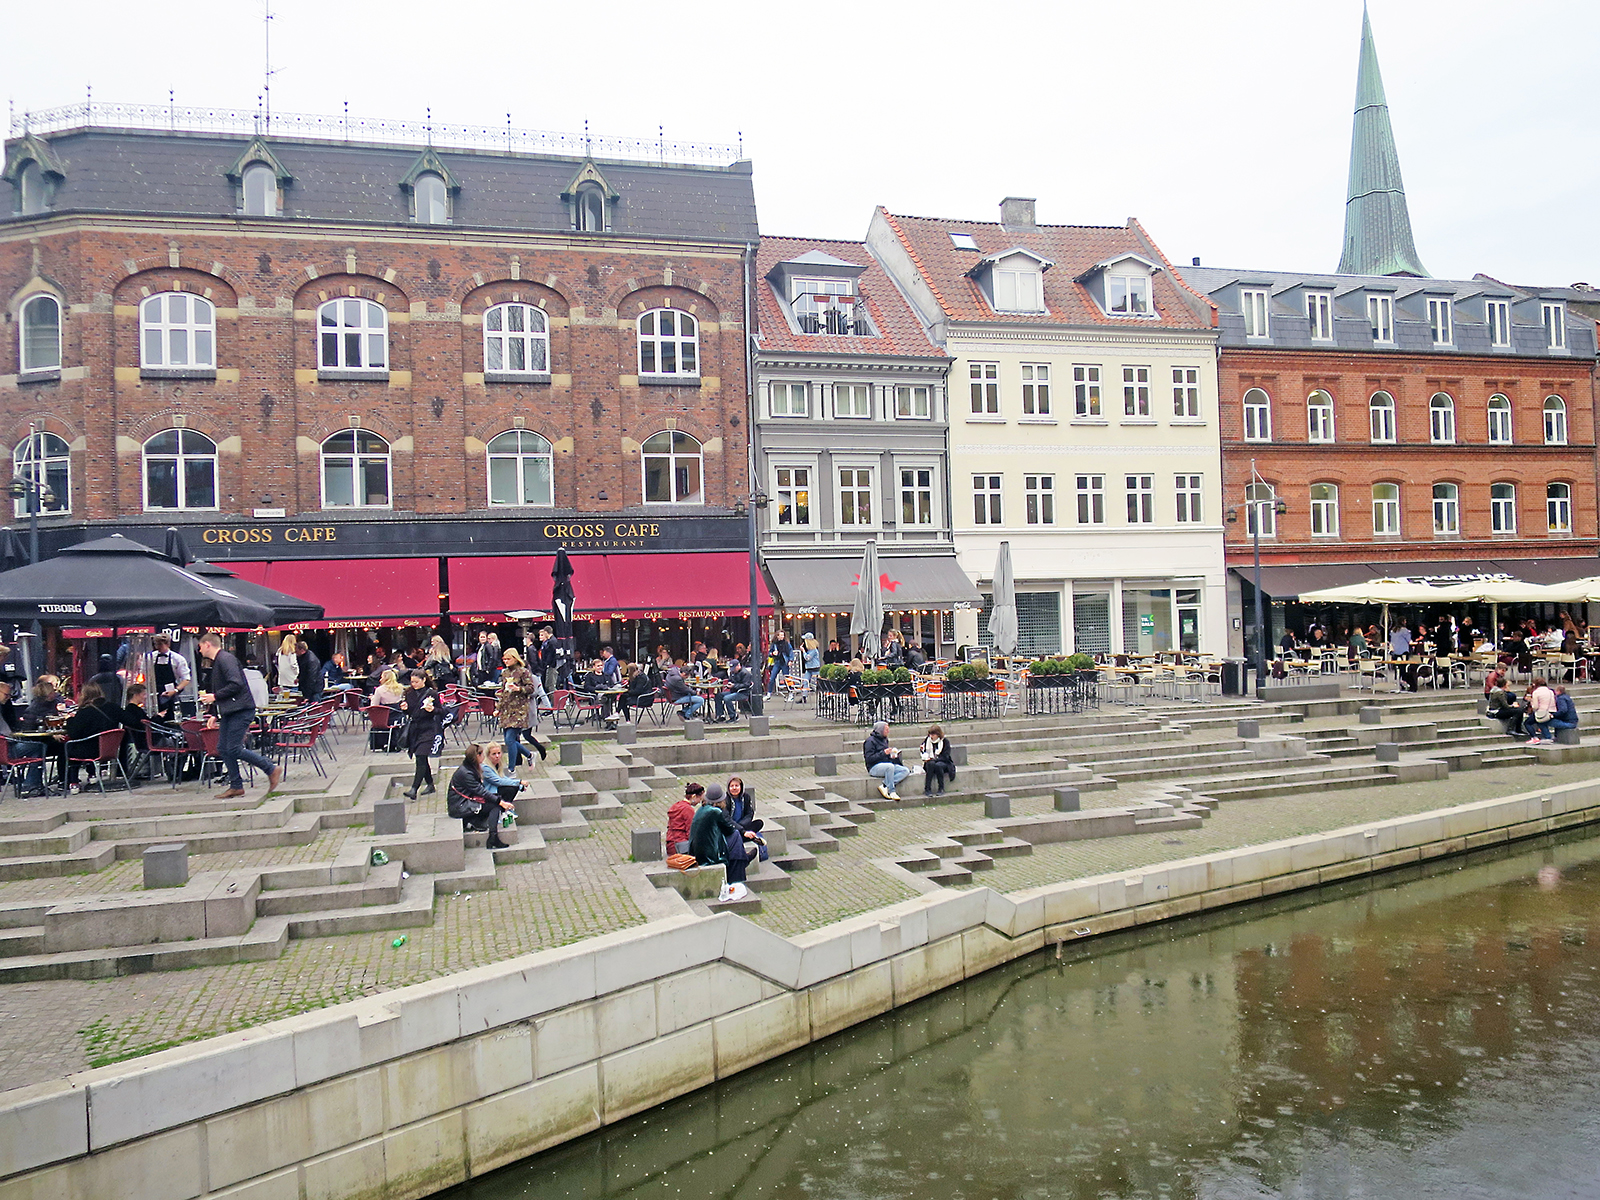 Aarhus statt Kopenhagen: 10 Dinge, die man in Aarhus unbedingt machen muss